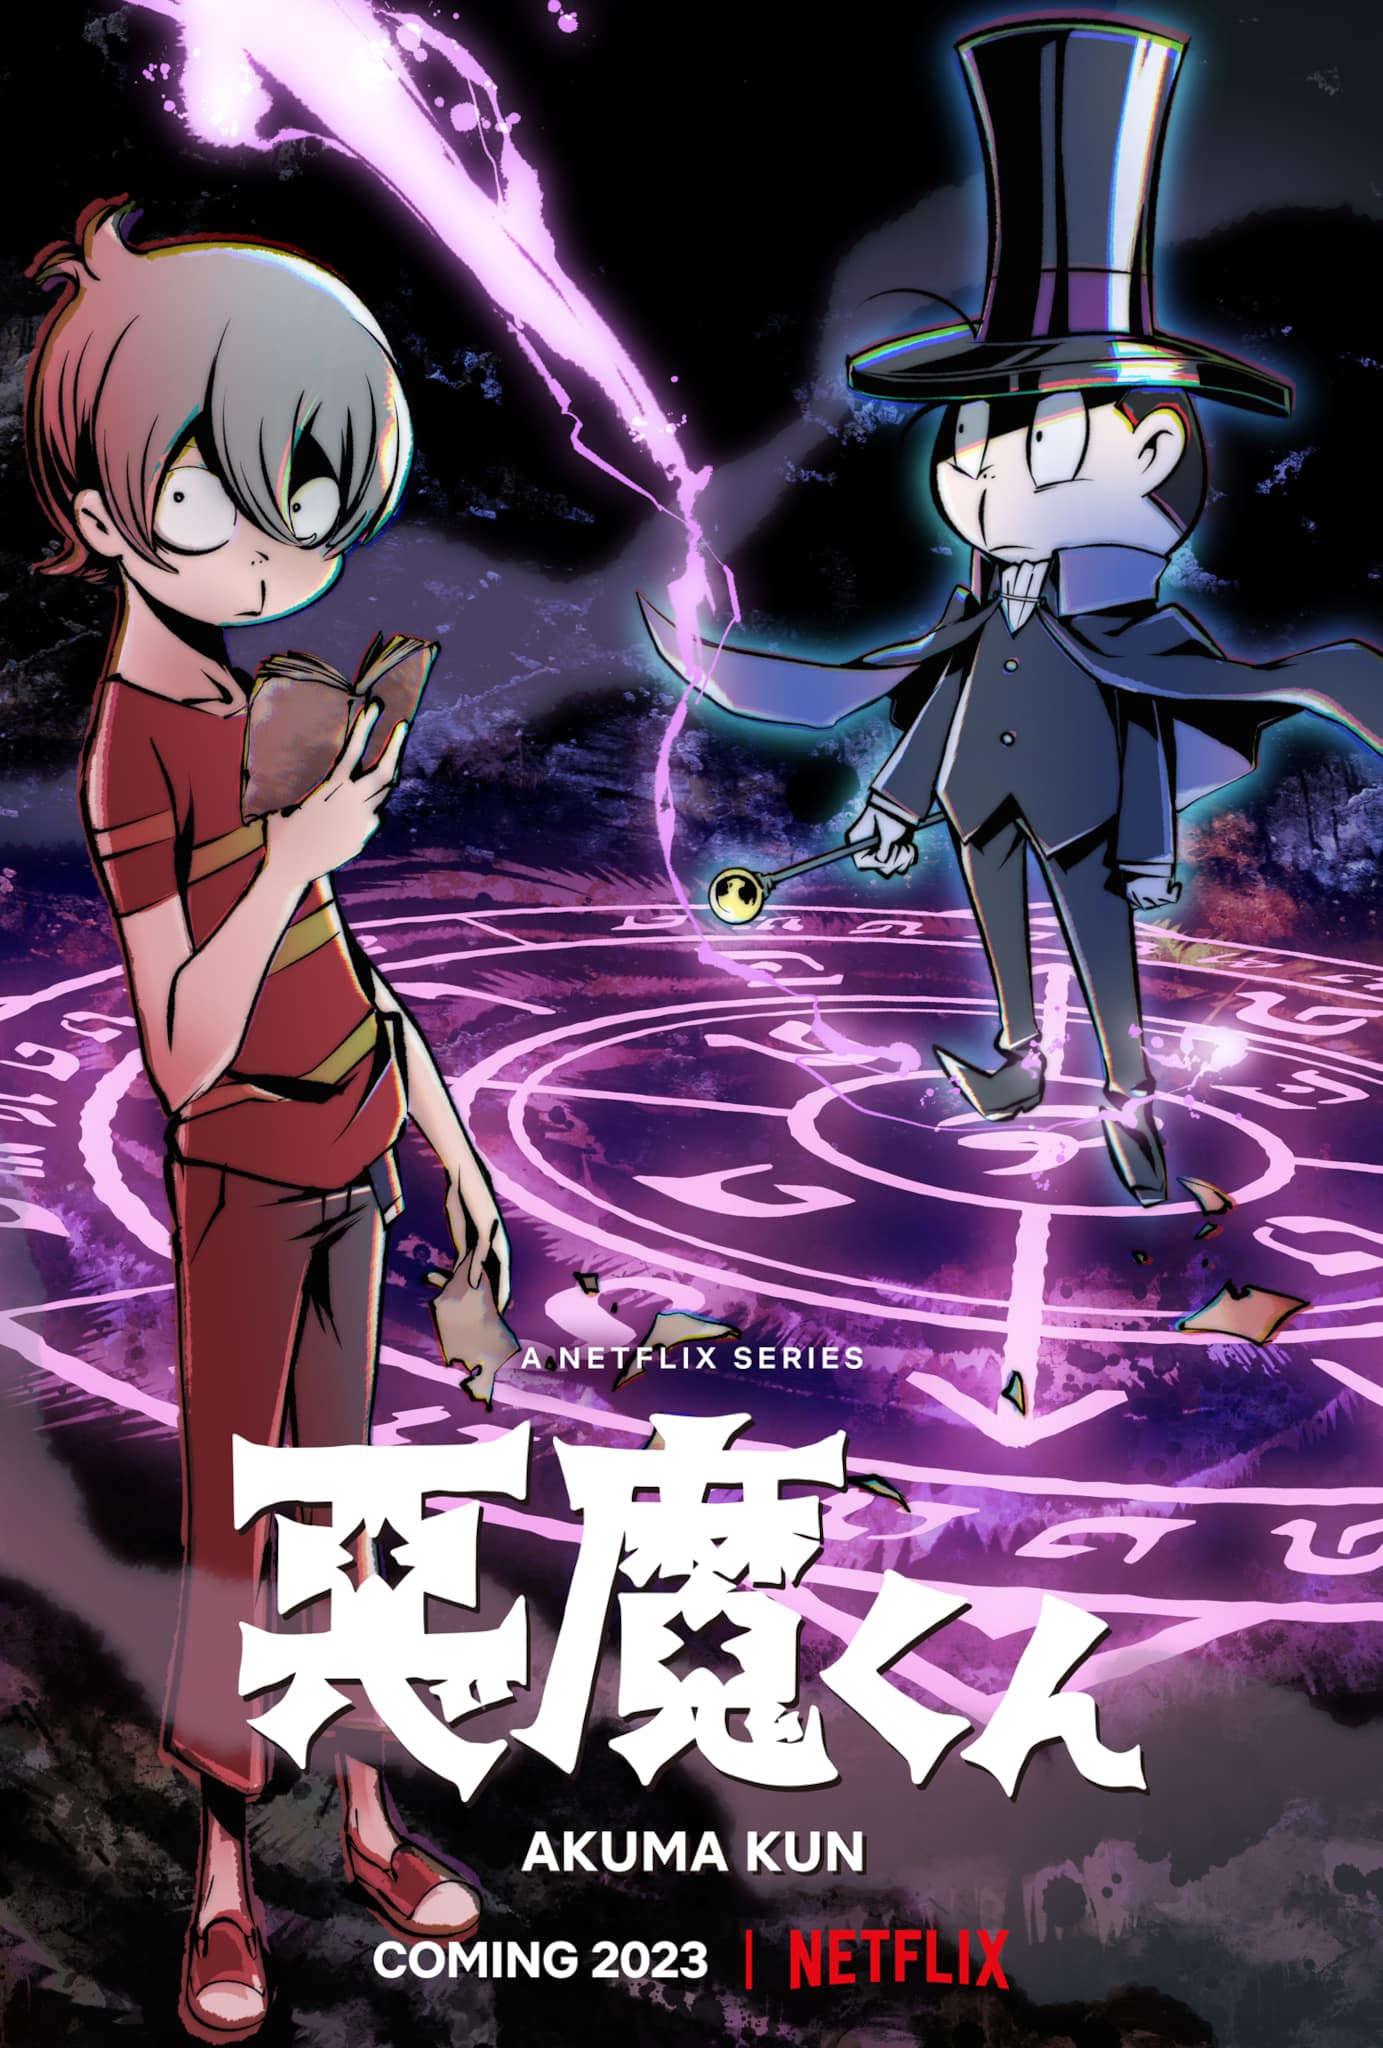 Troisième visuel pour le nouvel anime Akuma-kun